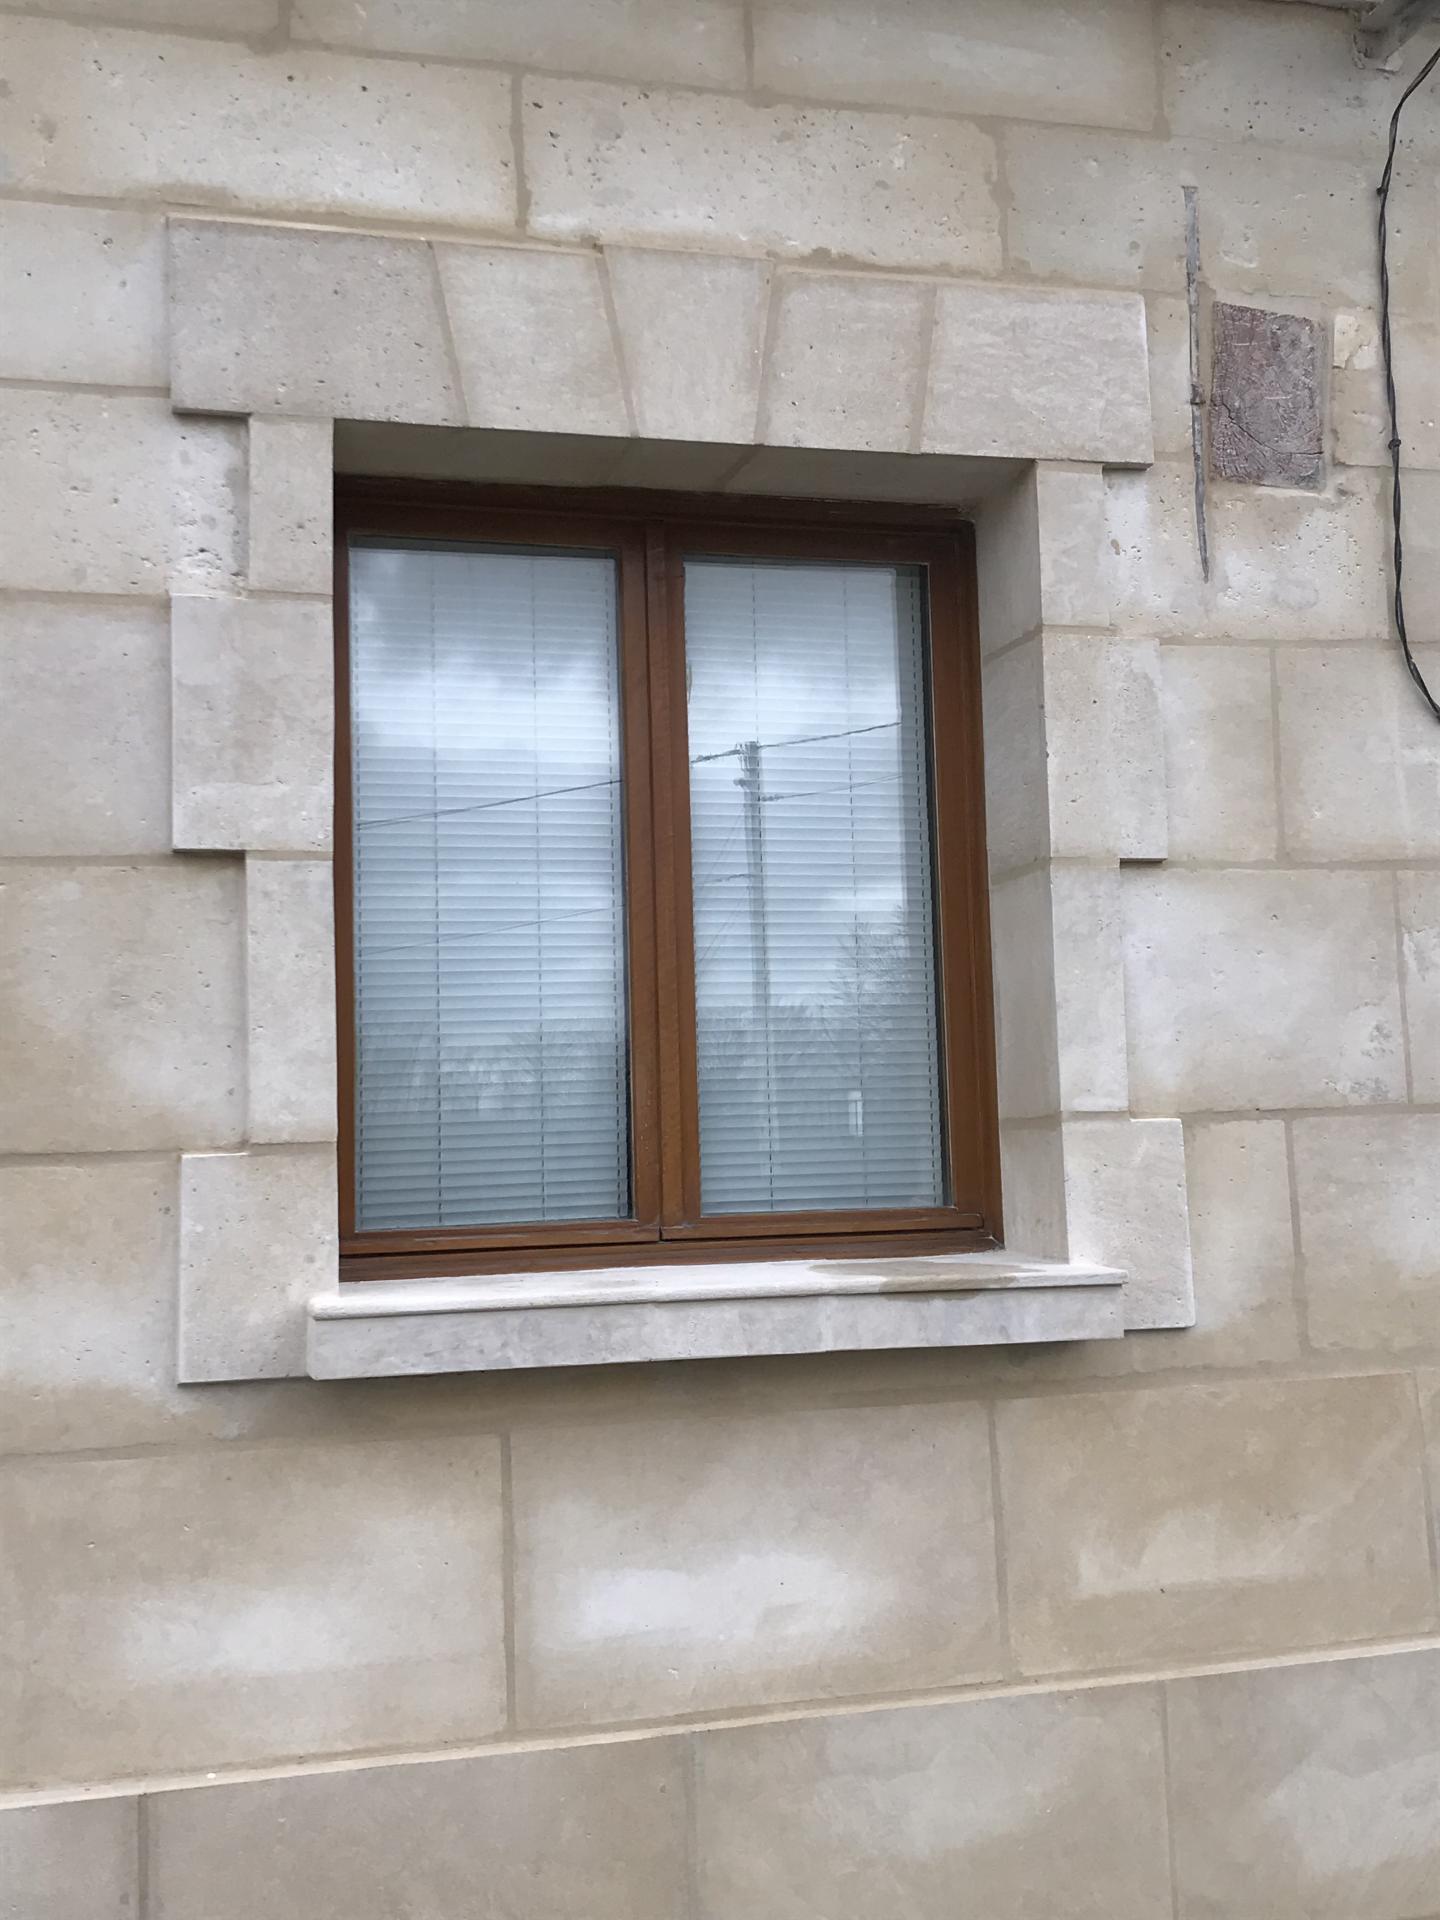 Encadrement fenêtre en pierre